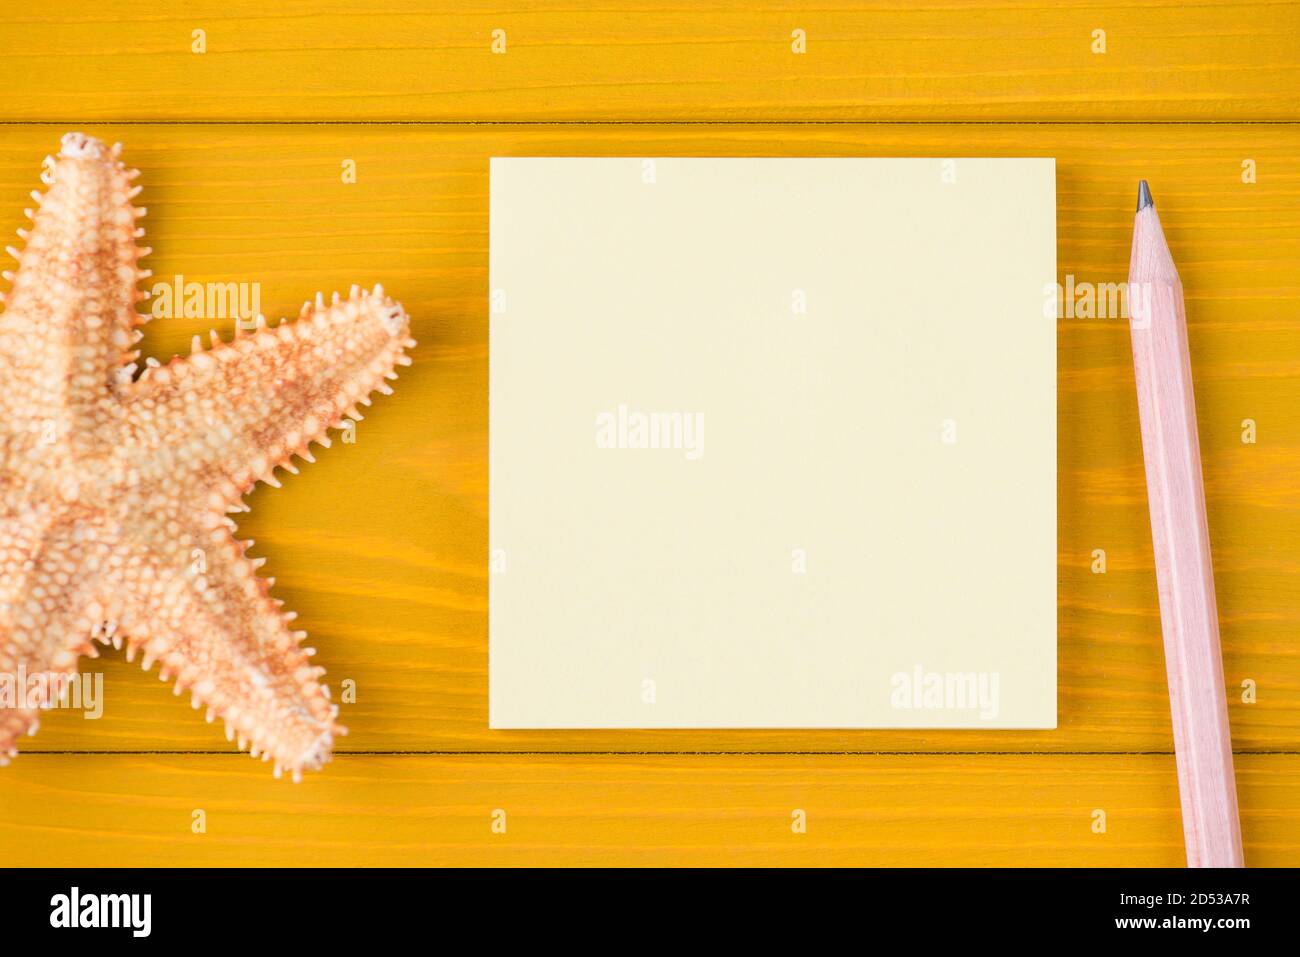 Vue de dessus de la tête gros plan rognée photo d'étoiles de mer vierge note et crayon isolés sur fond en bois jaune avec espace de copie Banque D'Images